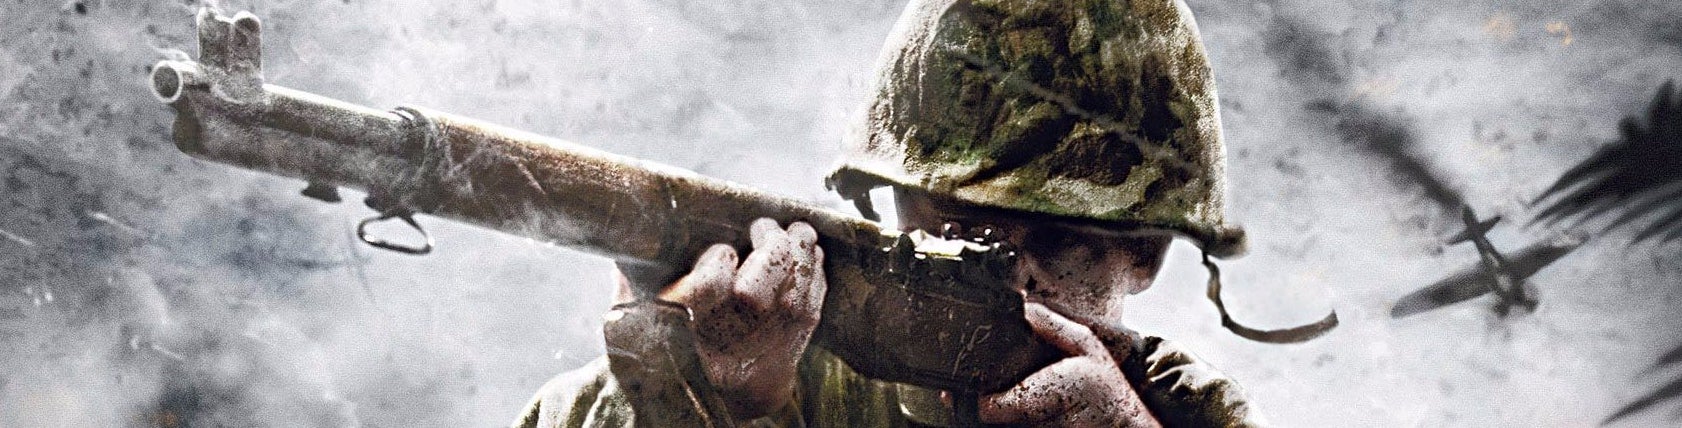 Imagem para Digital Foundry - Call of Duty: WW2 na Xbox One X e PS4 Pro?